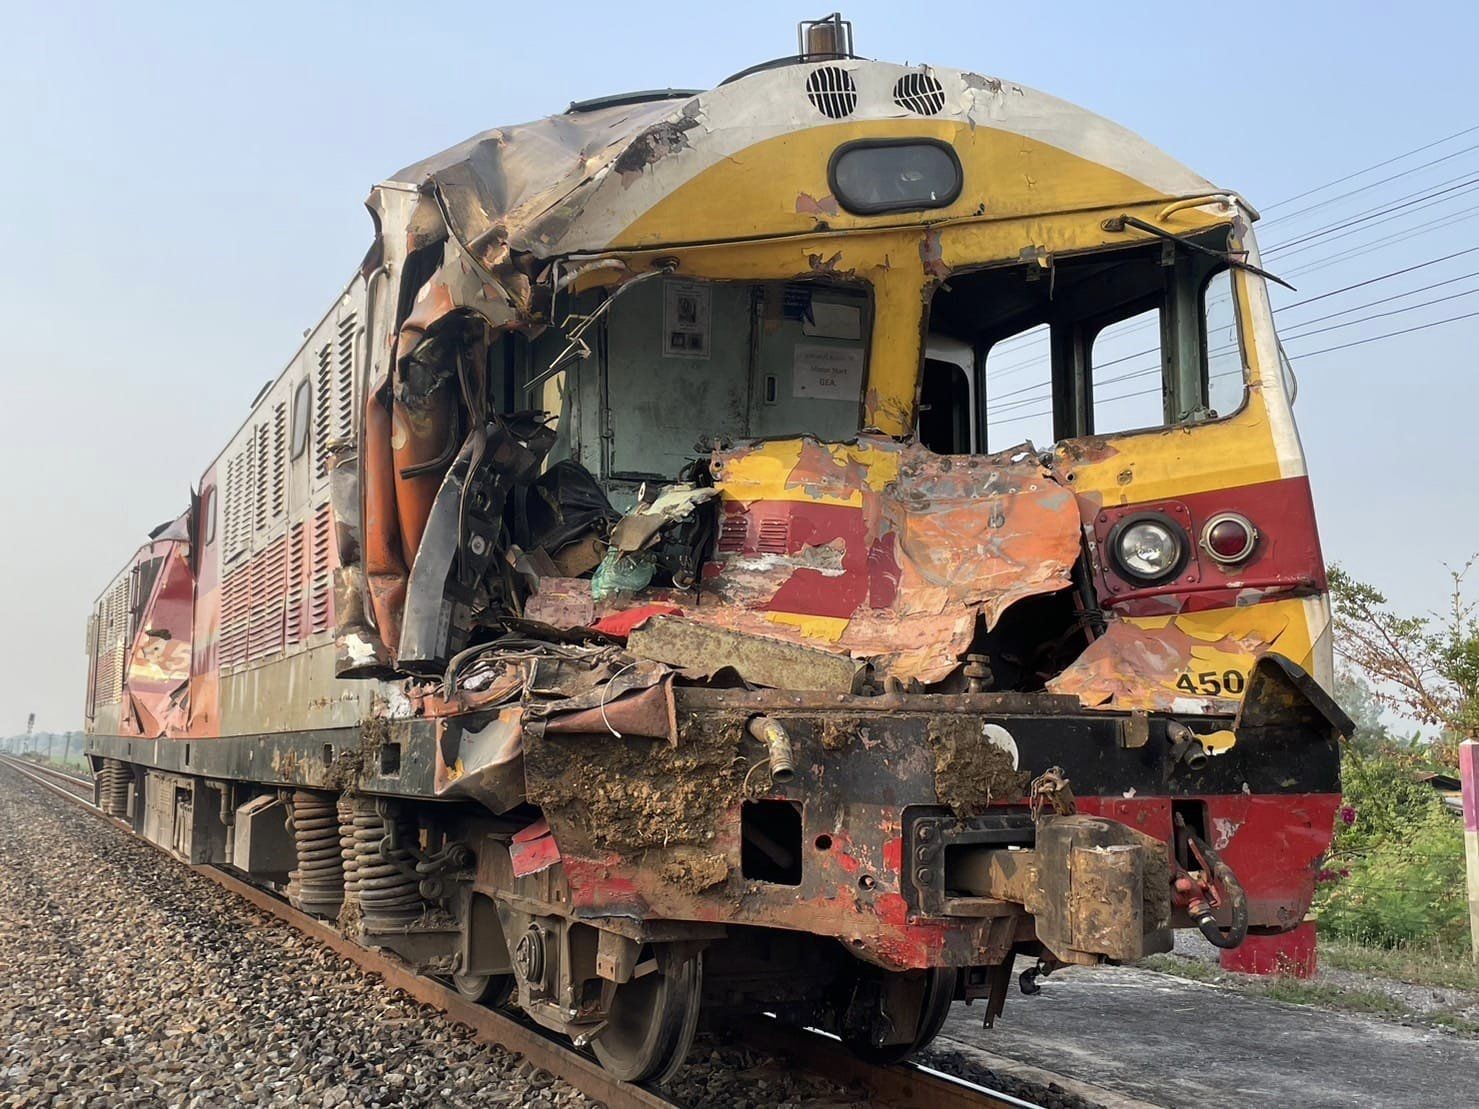 Tayland’da Yolcu Treni Kazaya Karıştı: 1 Kişi Hayatını Kaybetti, 5 Kişi Yaralandı